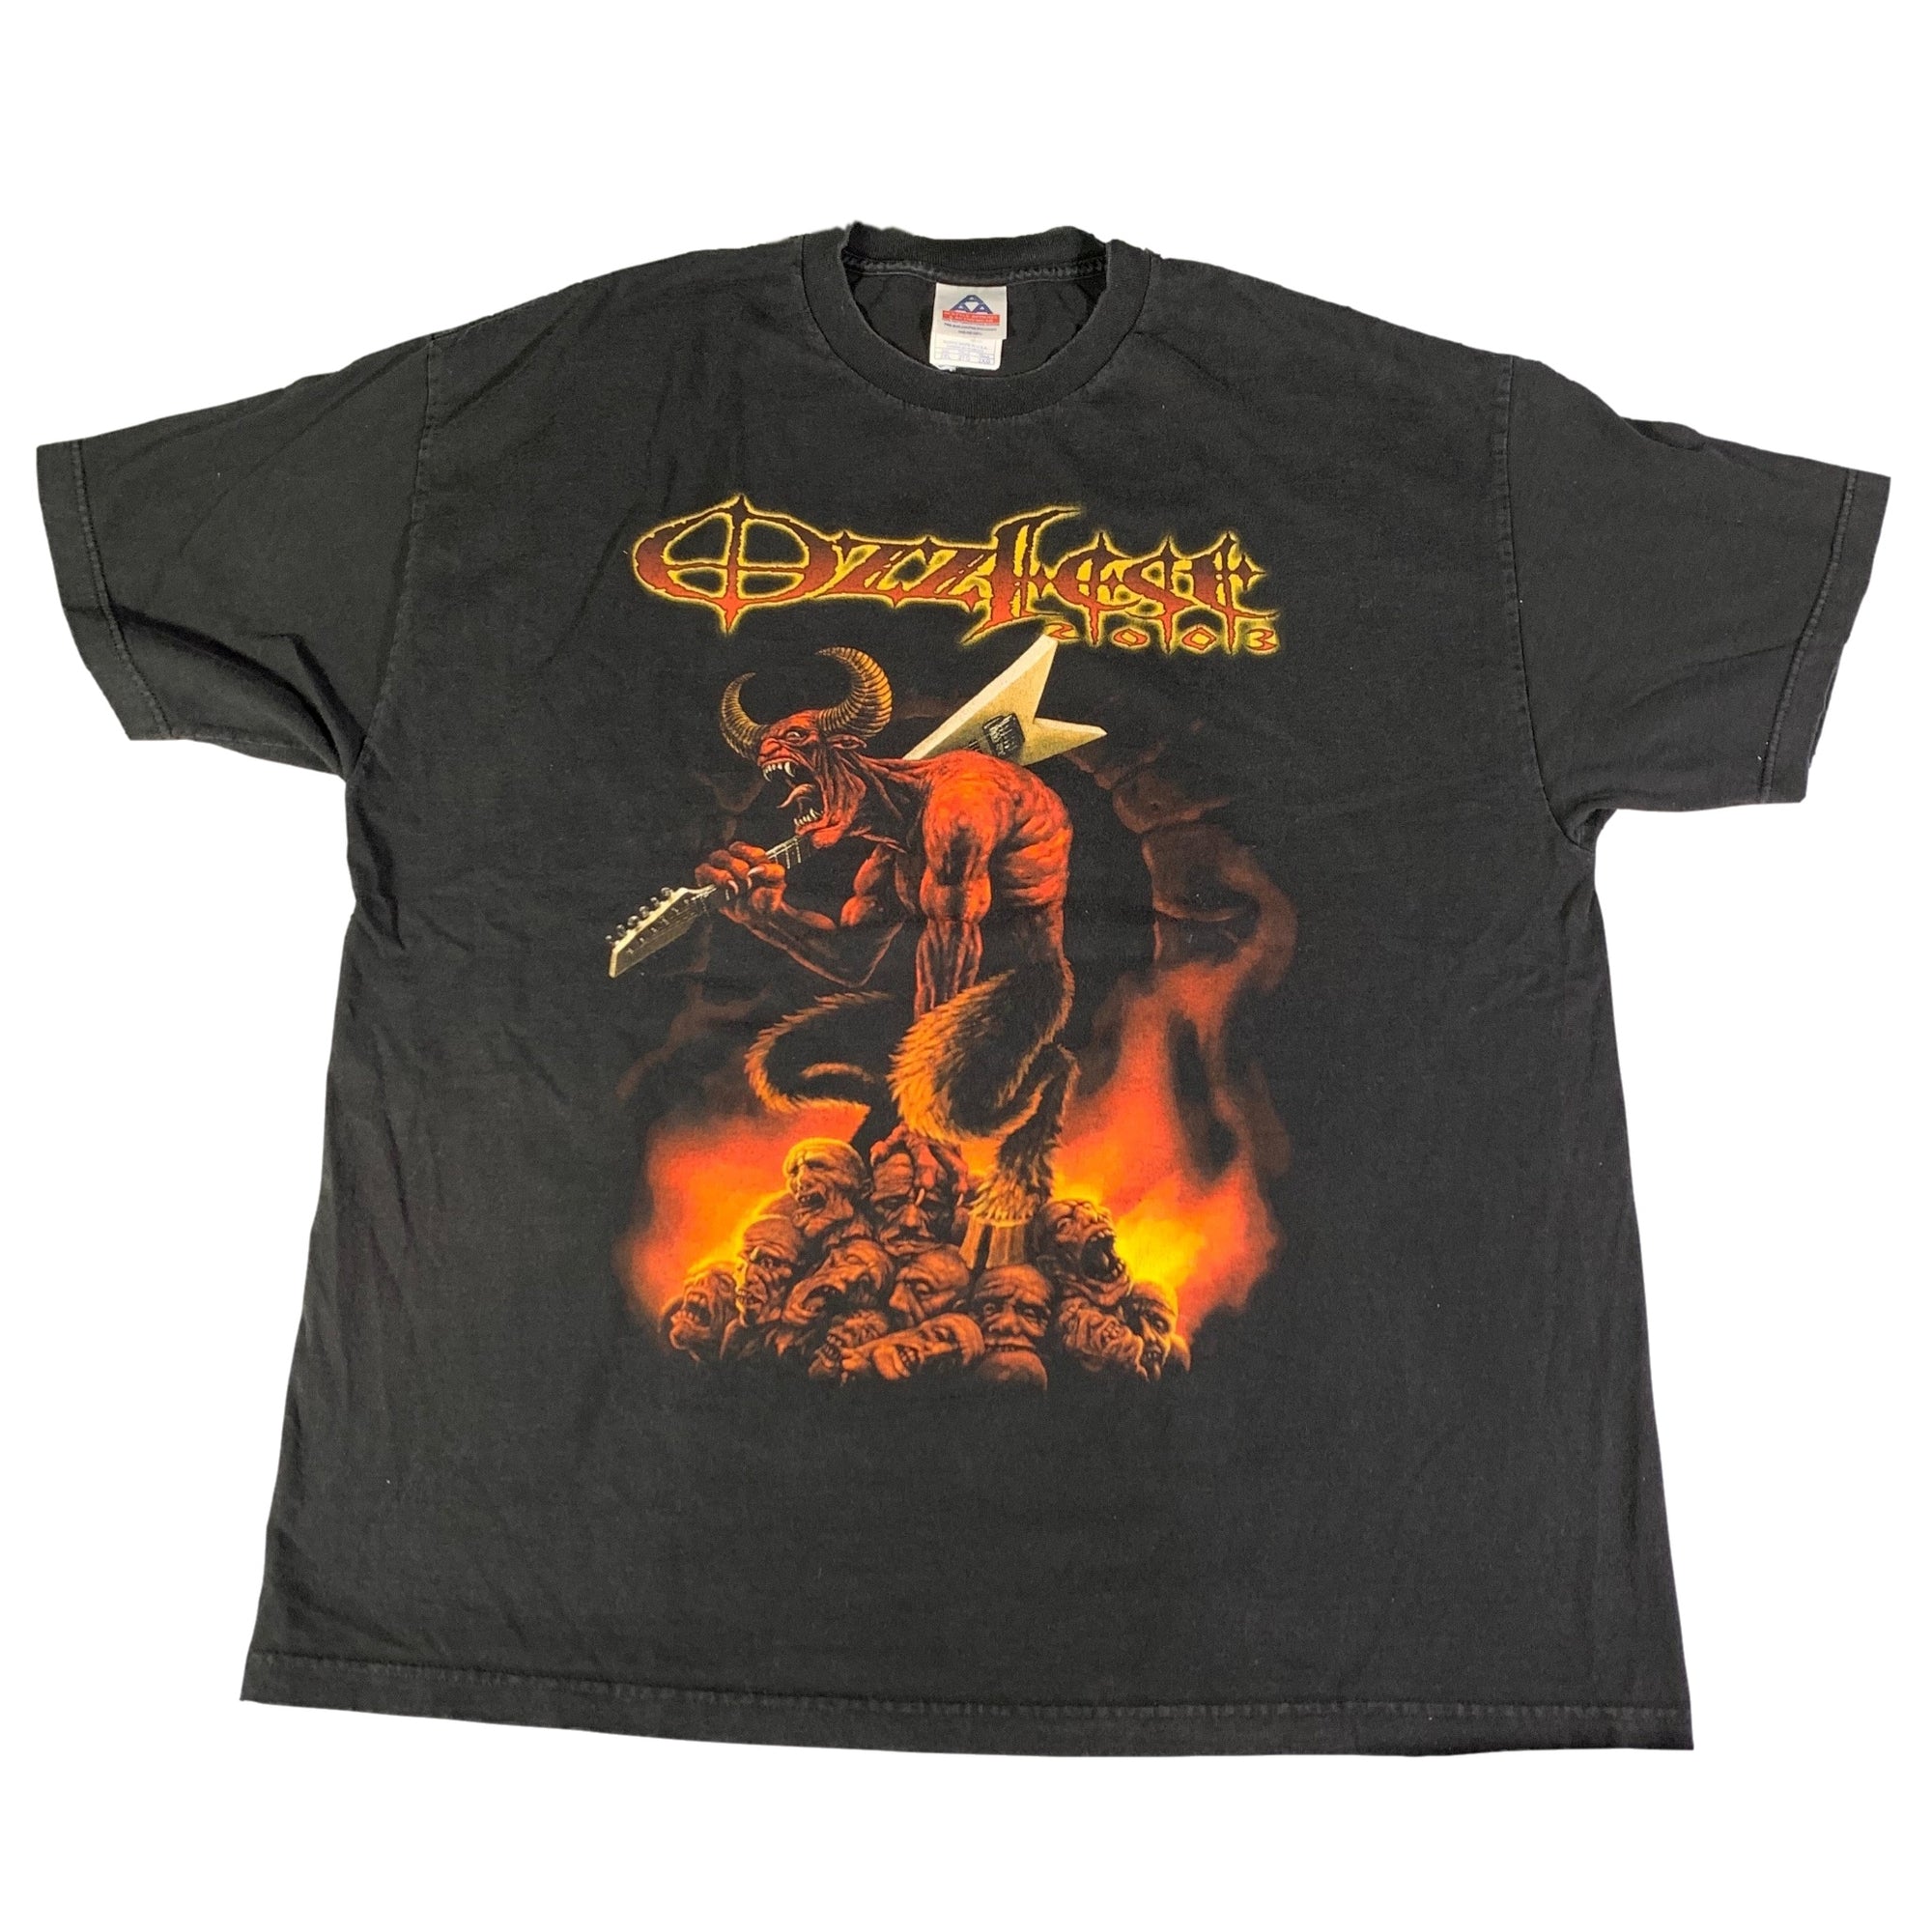 Vintage Ozzfest "2003" T-Shirt - jointcustodydc